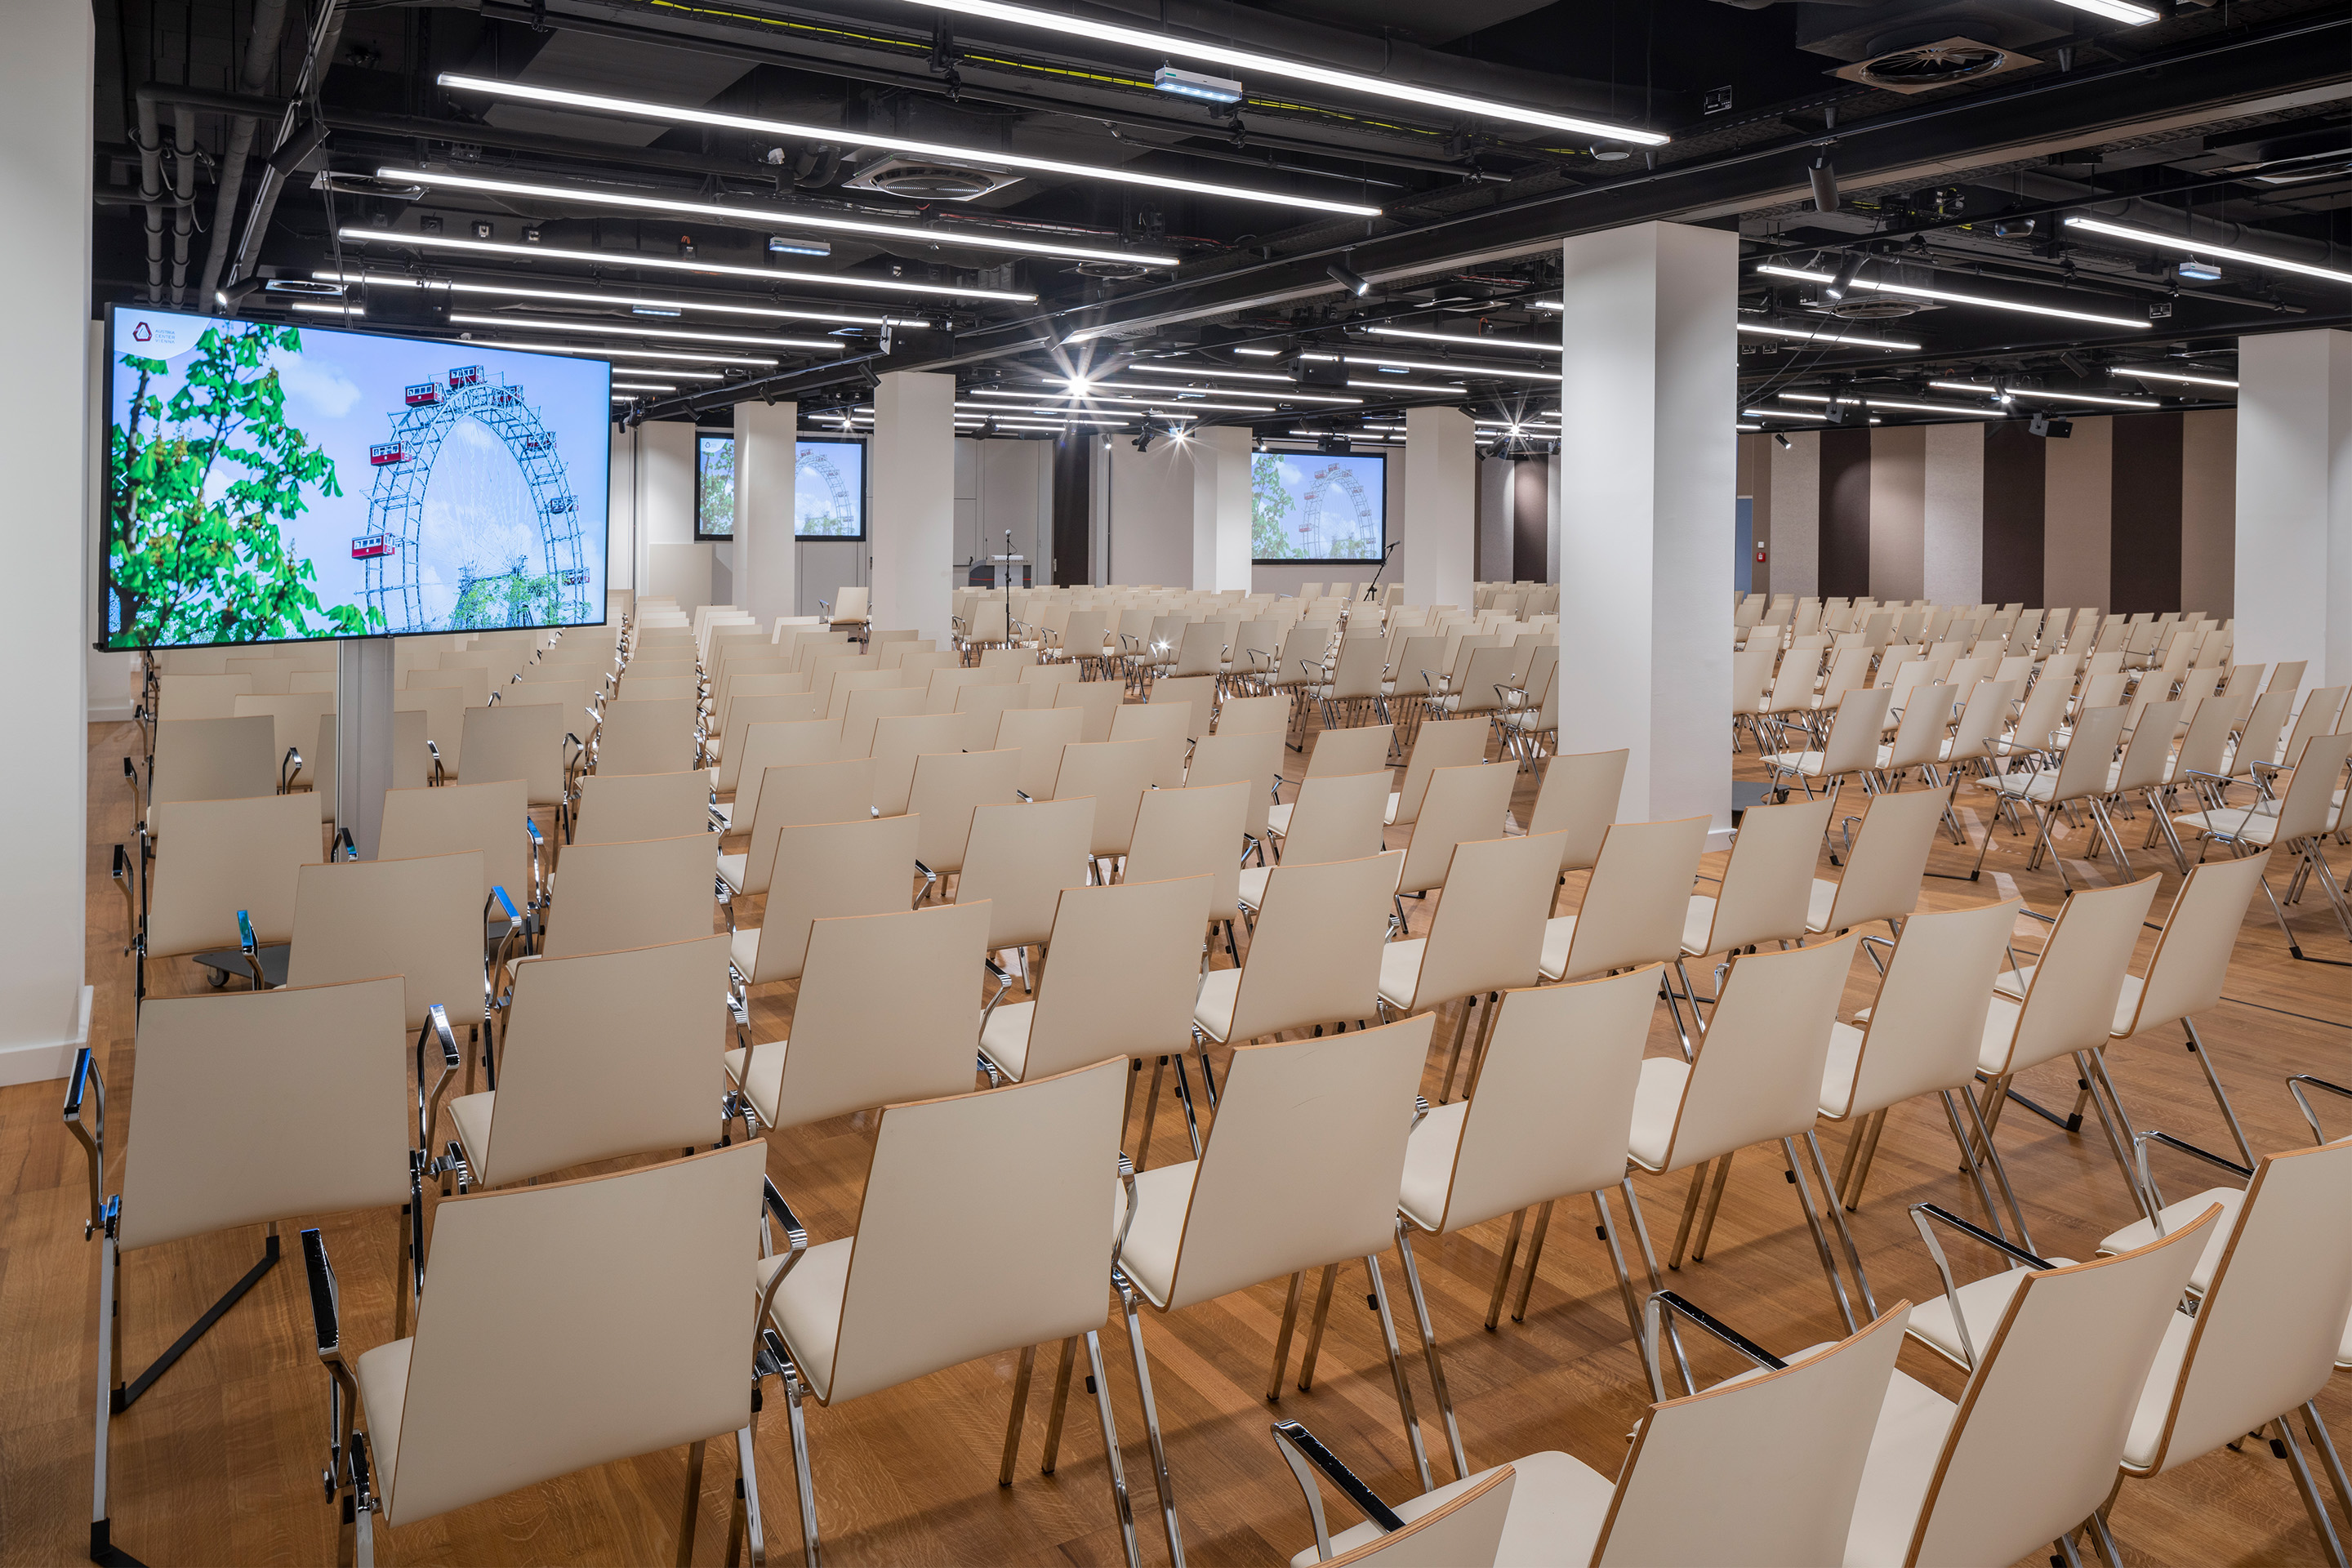 Foto: Sitzreihen in einem Saal mit Holzboden, Monitore, gestreifte Tapete